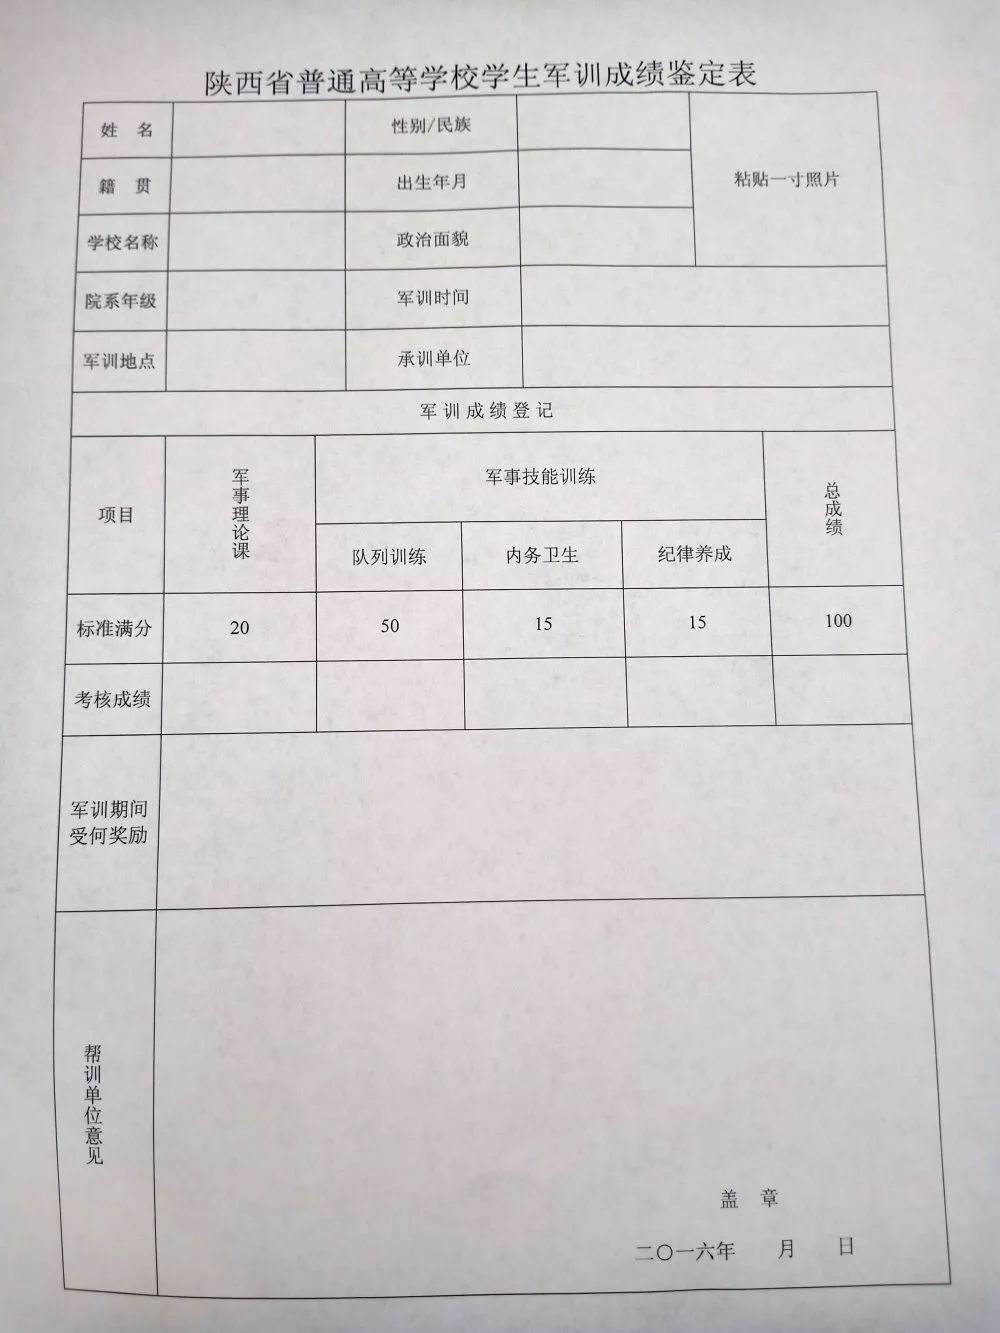 军训成绩鉴定表根据陕西省普通高等学校学生军训相关规定,新生应如期